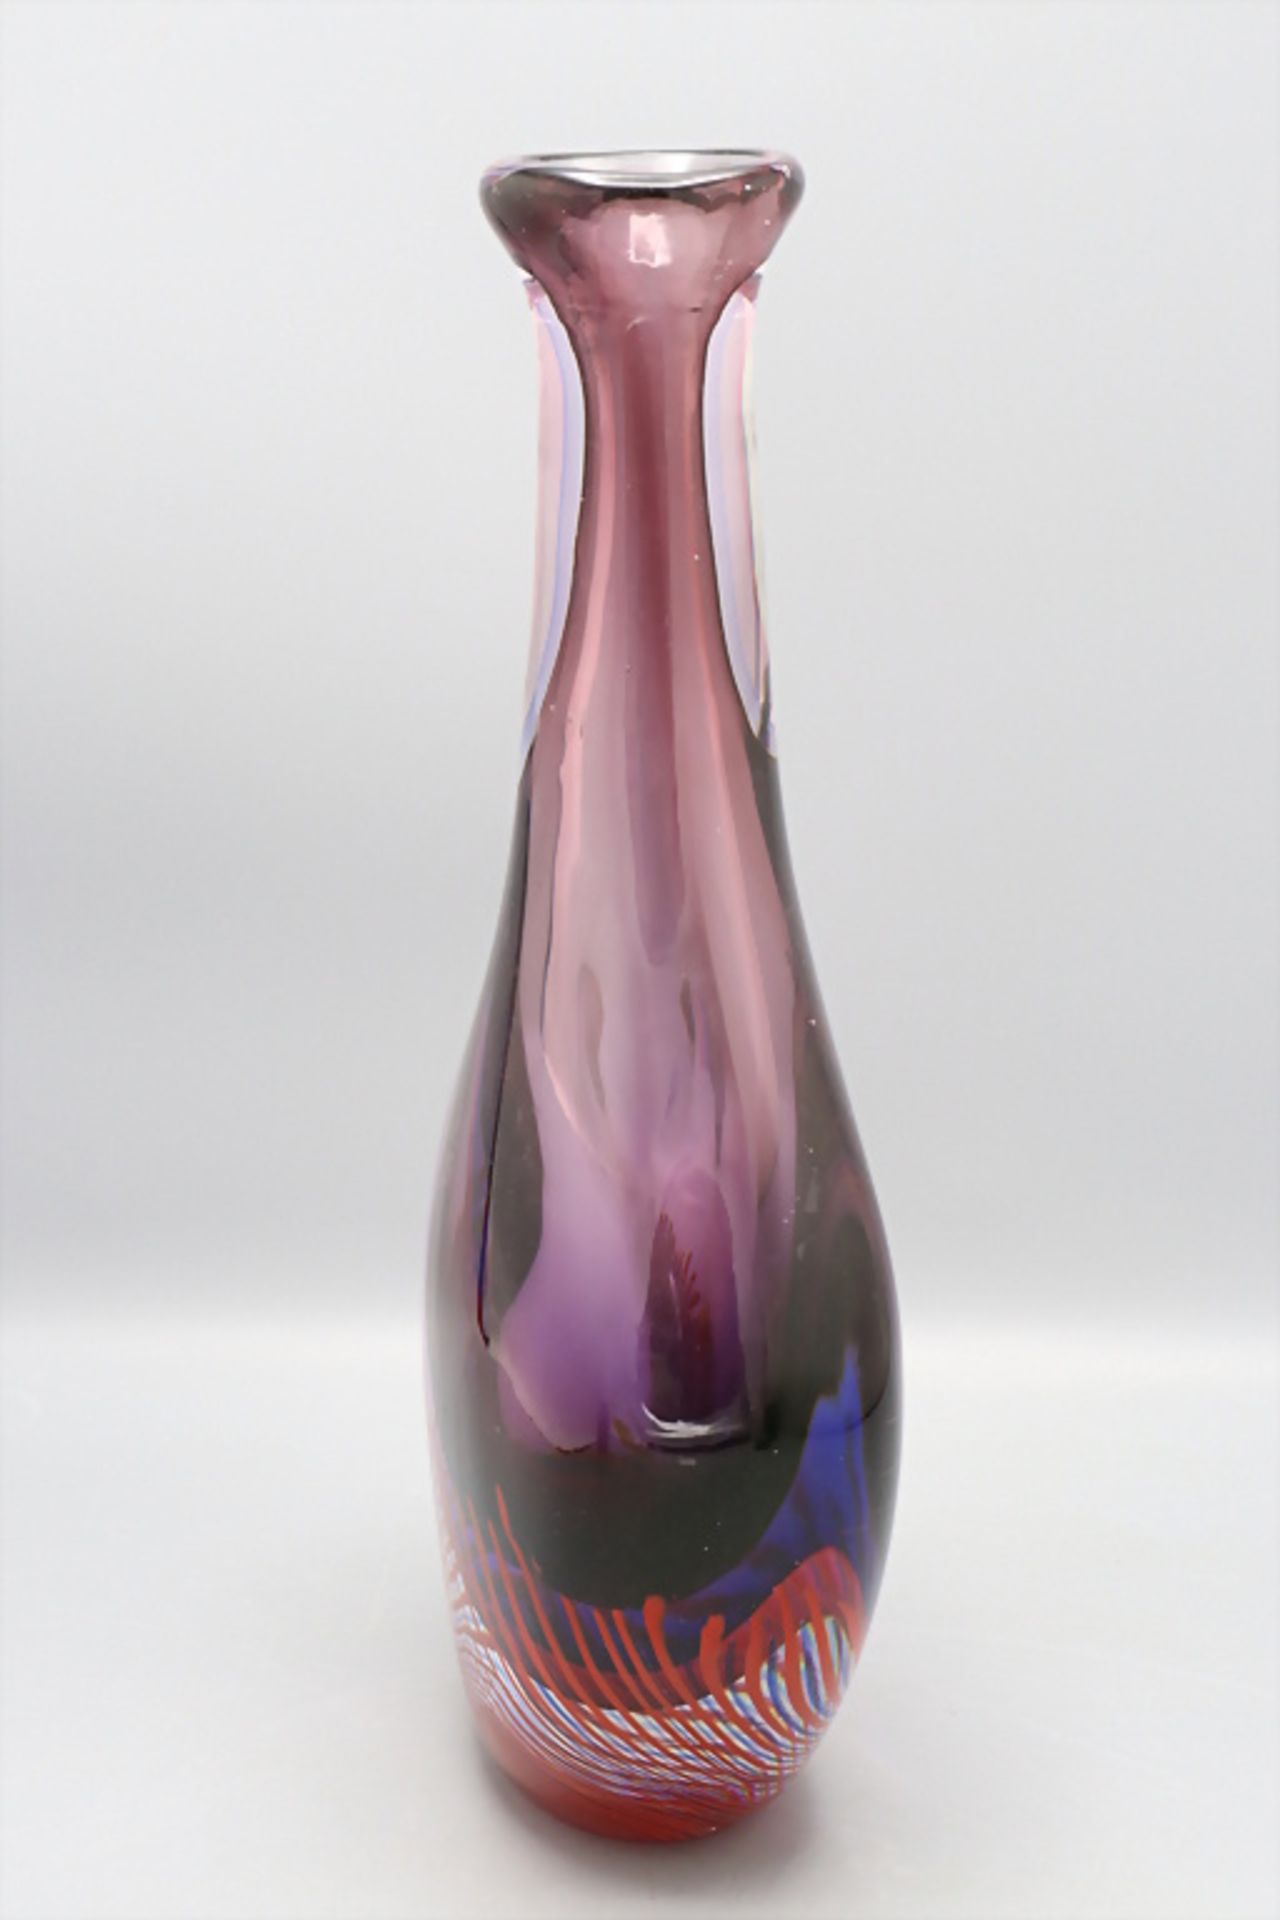 Glasziervase / A decorative glass vase 'Sommerso', Flavio Poli, Murano, 1960er Jahre - Bild 2 aus 6